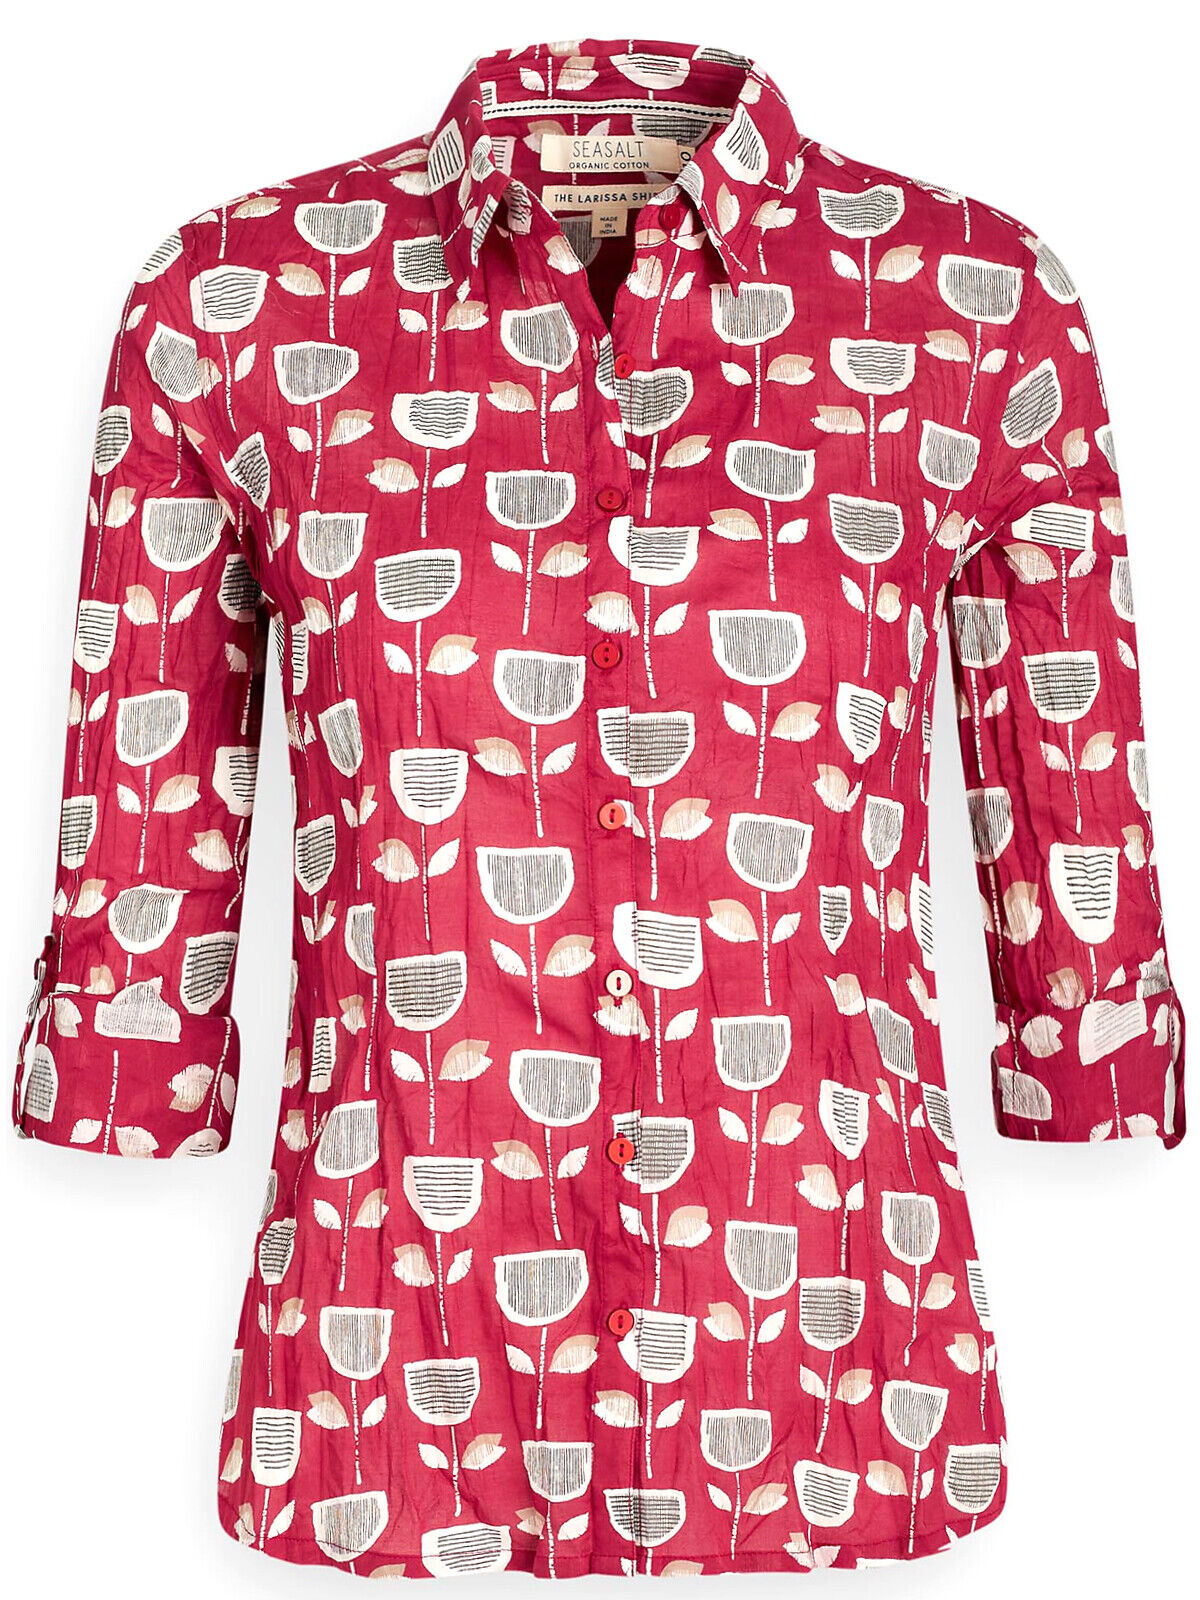 EX SEASALT Red Retro Tulip Beacon Organic Cotton Larissa Shirt 8 or 12 RRP £45